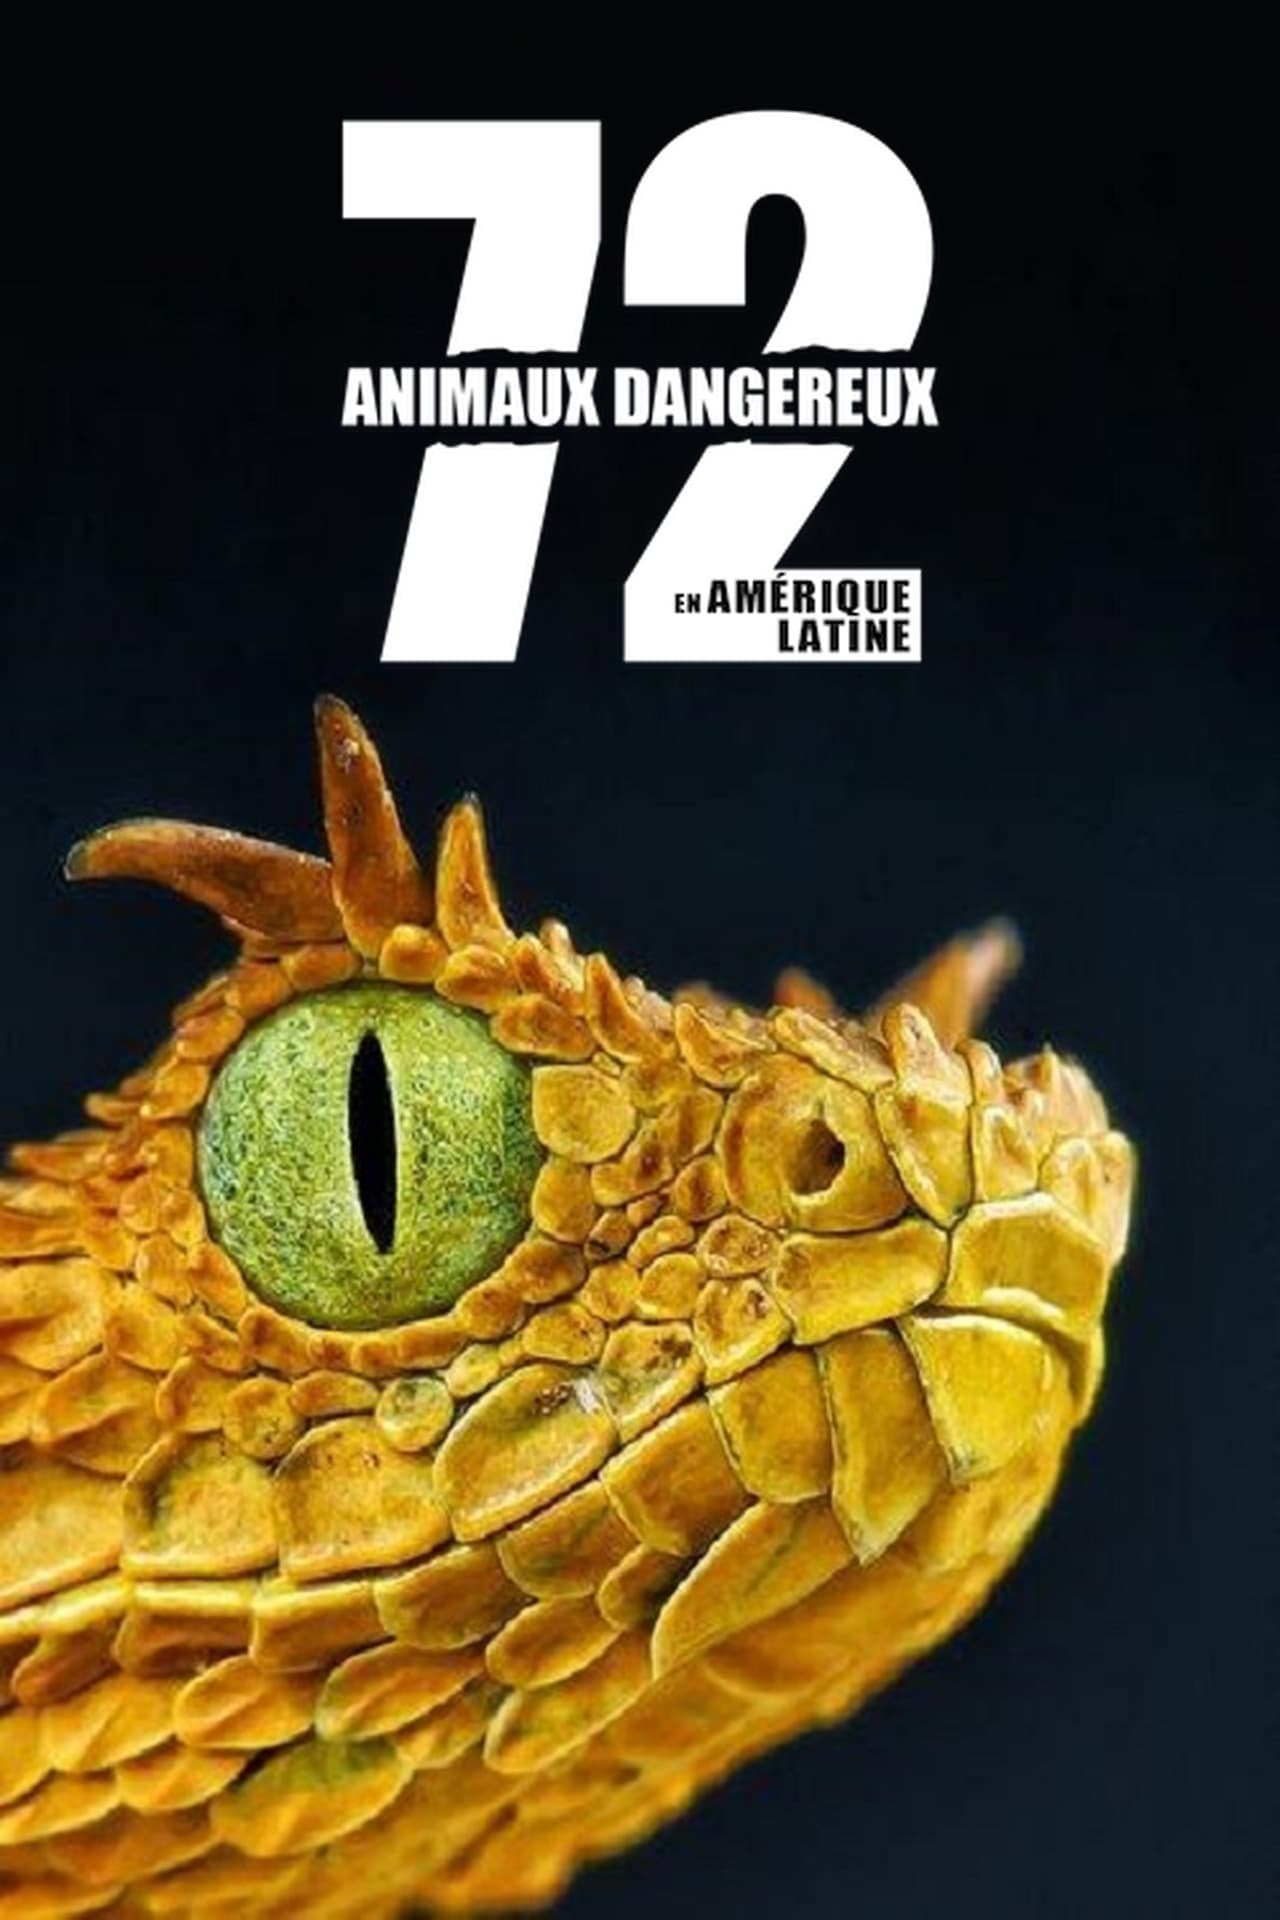 Affiche de la série 72 animaux dangereux en Amérique latine